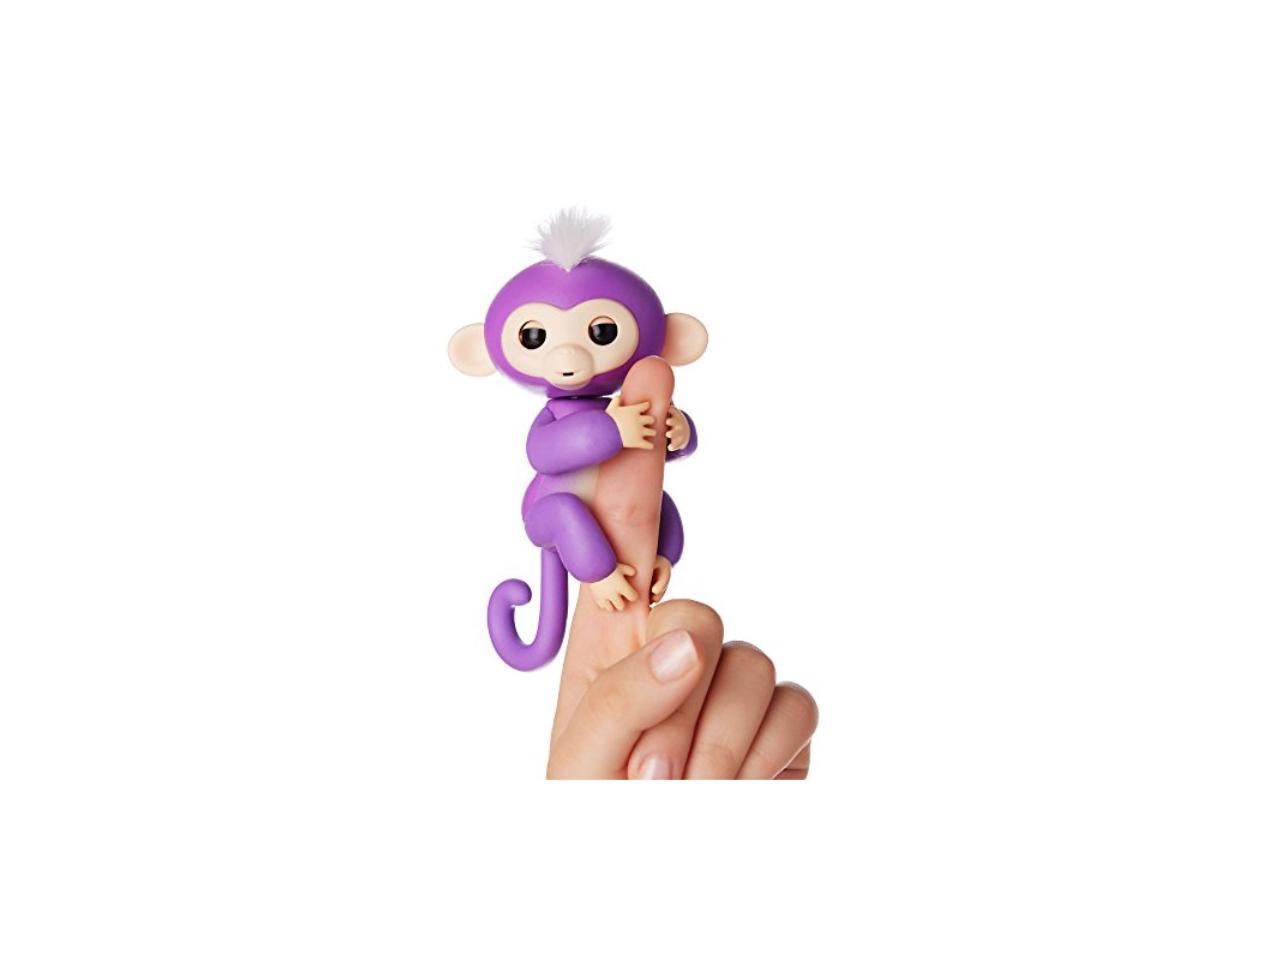 Wow Fingerling Interactive BLACK Baby Finger Monkey FINN BONUS Hot Toy 2017 